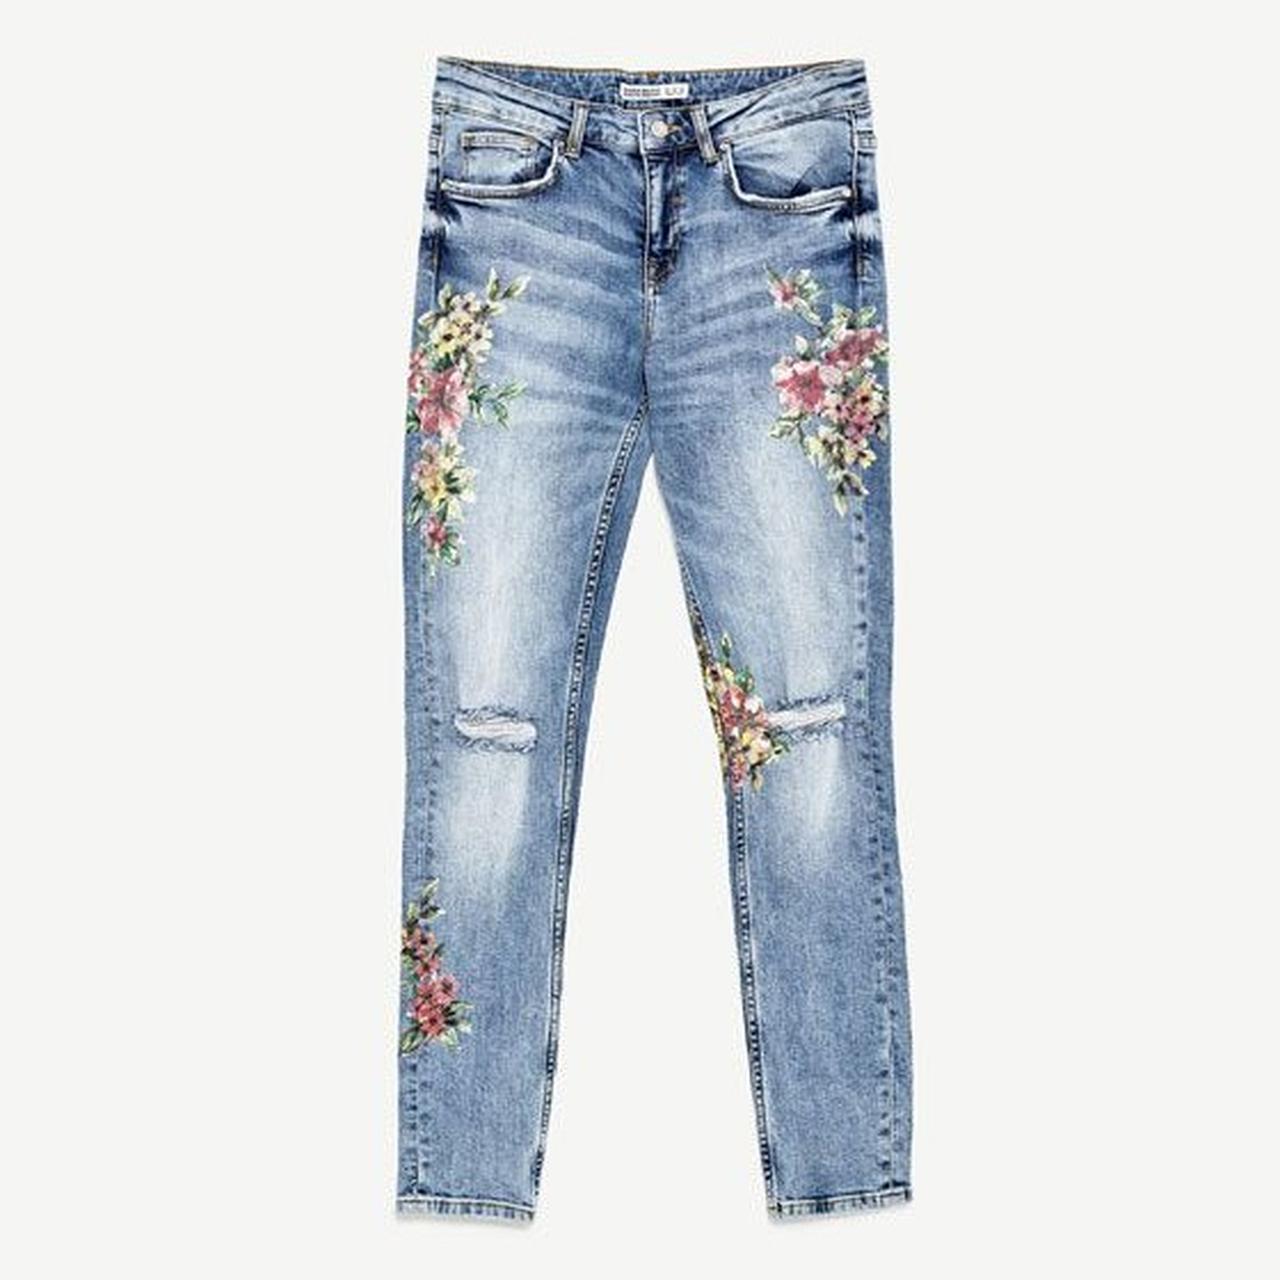 Zara Woman Floral Jeans Pants, Women's Fashion, Bottoms, Jeans